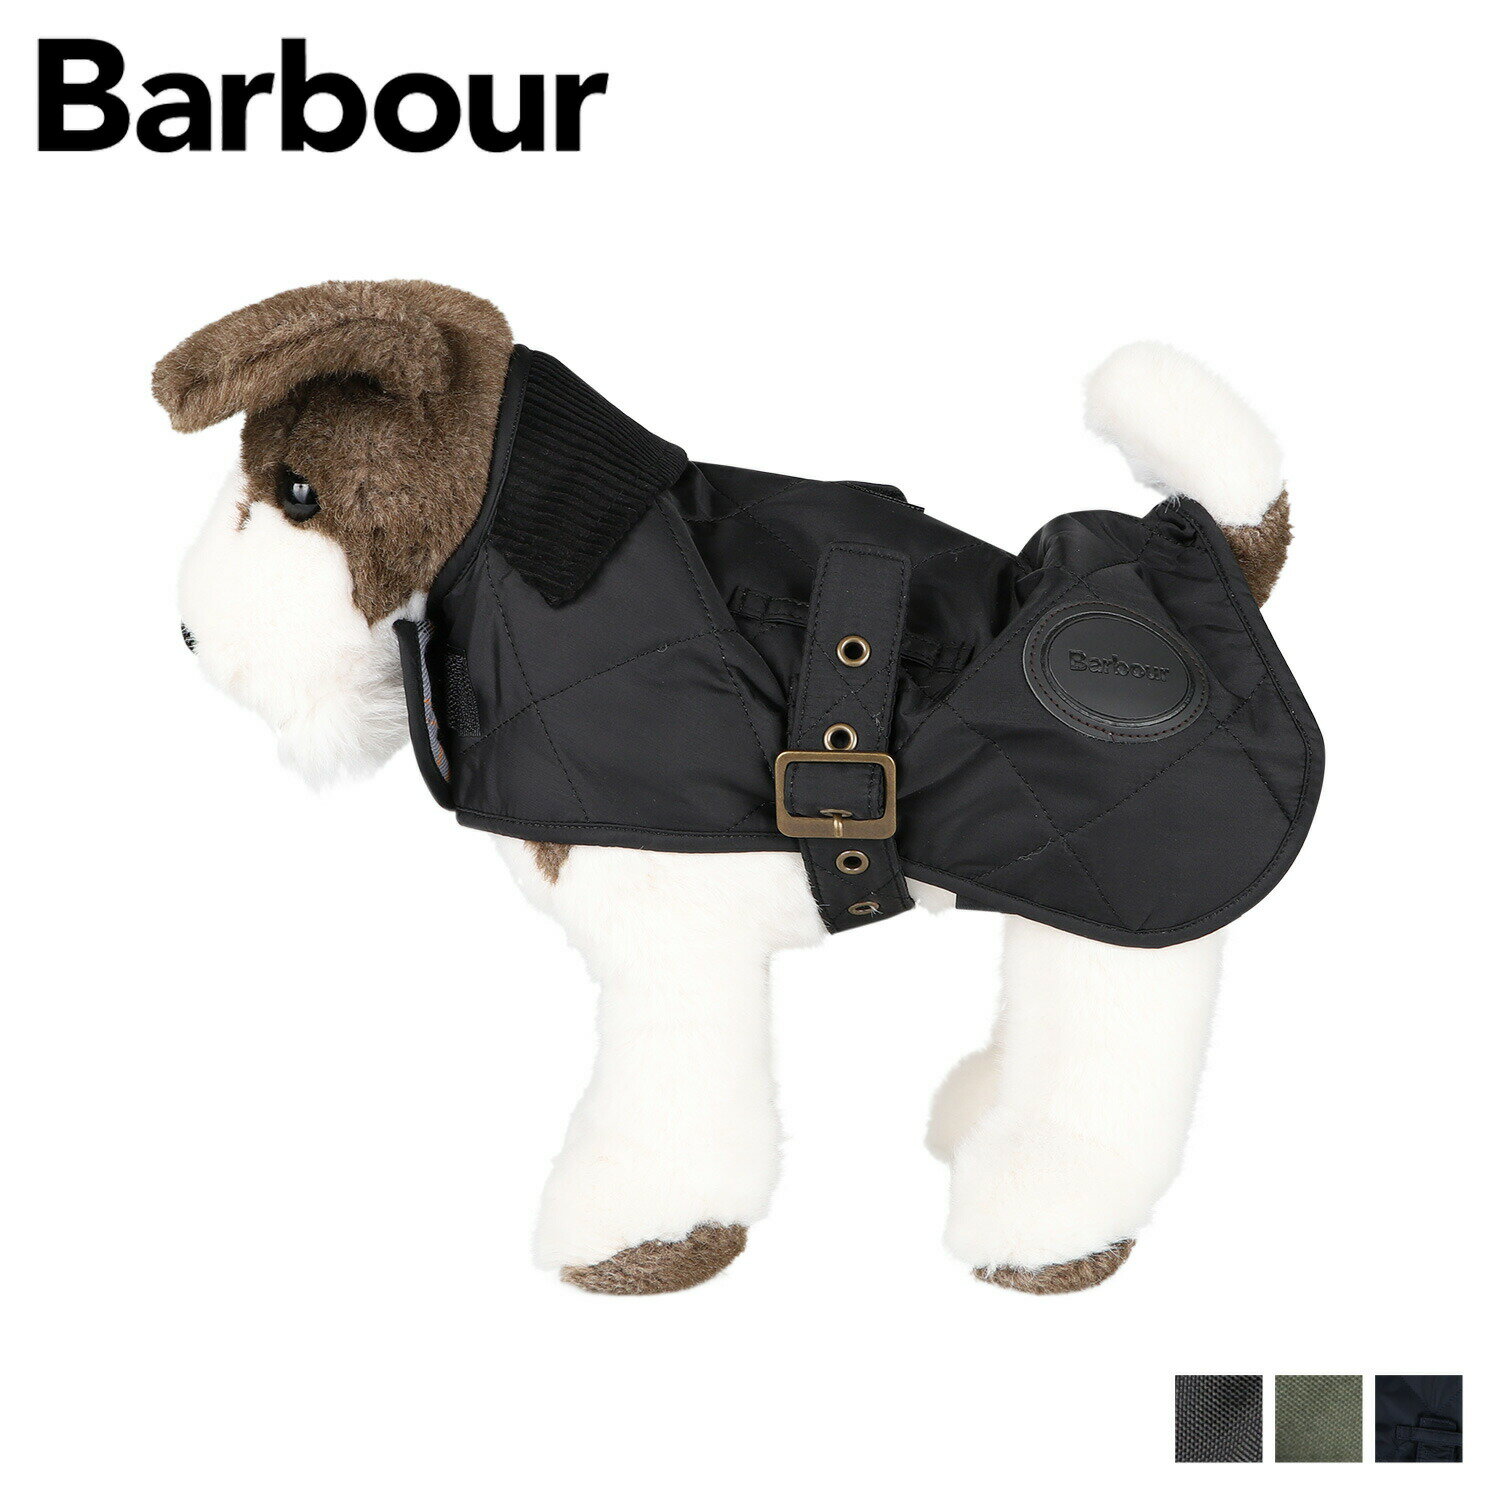 商品説明 【英国上流階級のアウトドアブランド Barbour】 バブーアのキルティング ドッグコートトです。中綿が入っているため保温性に優れています。キルティング地と襟のコーデュロイが、まるで人間のバブアージャケットのようなデザインです。首元はベルクロで、胴回りはベルトで調節が可能です。 ブランド名 / 商品名 Barbour バブアー / Quilted Dog Coat DCO0004 カラー ブラック：BLACK オリーブ：OLIVE ネイビー：NAVY 素材 / 仕様 表地：ポリエステル 100％ 裏地：綿 100% コーデュロイ部分：綿 100% 詰物：ポリエステル 100％ 生産国 BULGARIA VIETNAM サイズ XS：胴回り：24cm×首回り：21cm×ベルト：31.5cm×後着丈：25cm×前着丈：7cm S：胴回り：30cm×首回り：31cm×ベルト：38cm×後着丈：35.5cm×前着丈：7.5cm M：胴回り：37cm×首回り：43cm×ベルト：45.5cm×後着丈：45cm×前着丈：8cm L：胴回り：45.5cm×首回り：58cm×ベルト：54.5cm×後着丈：54cm×前着丈：8.5cm XL：胴回り：56cm×首回り：68cm×ベルト：62cm×後着丈：66cm×前着丈：9cm ご購入前に必ずお読みください サイズ・仕様について 平置きして採寸したサイズになります。商品によっては若干の誤差が生じてしまう場合がございます。また、商品やブランド等によりサイズが異なります。（単位はcmになります。） カラーについて 個体ごとに若干の誤差がある場合がございます。商品の画像は、できるだけ商品に近いカラーにて、掲載をしております。 お客様のモニターの設定により、色味に違いが発生してしまう場合もございます。あらかじめご了承ください。 予約商品の納期発送目安について 予約商品の納期発送目安は、以下の通りになります。 上旬：1日-10日頃発送予定 中旬：11日-20日頃発送予定 下旬：21日-末日頃発送予定 ※目安になりますので、日程が多少前後する場合があります。 並行輸入に関して この商品は並行輸入品です。 並行輸入品とは、海外で正規販売（正規卸売）されている商品を買い付けて輸入し販売している海外正規品のことです。 サプライヤー保護のため、外装箱についているバーコードや商品タグの一部が一部切り取られている場合がございますが、正規品ですので安心してお買い求め下さい。 類似商品はこちらBarbour Wax Dog Coat バブ7,500円Barbour LOWERDALE GILET22,500円carhartt DOG CHORE COAT6,800円Barbour QUILTED RIB COL24,000円carhartt QUICK DUCK FLE6,000円Barbour QUINN バブアー クロッグ10,500円Barbour BEDE バブアー レインブー15,000円Barbour NIMBUS バブアー レイン13,000円SUNDOG DOG WALK サンドッグ バ4,900円新着商品はこちら2024/5/19pinktrick グロライン ピンクトリック3,630円2024/5/19pinktrick リネン風フリル ピンクトリ3,630円2024/5/19pinktrick プレーン ピンクトリック 3,630円再販商品はこちら2024/5/19IS/IT BUSINESS BAG イズイッ34,100円2024/5/19RIVER LIGHT 極JAPAN リバーラ9,130円2024/5/19RIVER LIGHT 極JAPAN リバーラ10,230円2024/05/20 更新 類似商品はこちらBarbour Wax Dog Coat バブ7,500円Barbour LOWERDALE GILET22,500円carhartt DOG CHORE COAT6,800円新着商品はこちら2024/5/19pinktrick グロライン ピンクトリック3,630円2024/5/19pinktrick リネン風フリル ピンクトリ3,630円2024/5/19pinktrick プレーン ピンクトリック 3,630円再販商品はこちら2024/5/19IS/IT BUSINESS BAG イズイッ34,100円2024/5/19RIVER LIGHT 極JAPAN リバーラ9,130円2024/5/19RIVER LIGHT 極JAPAN リバーラ10,230円